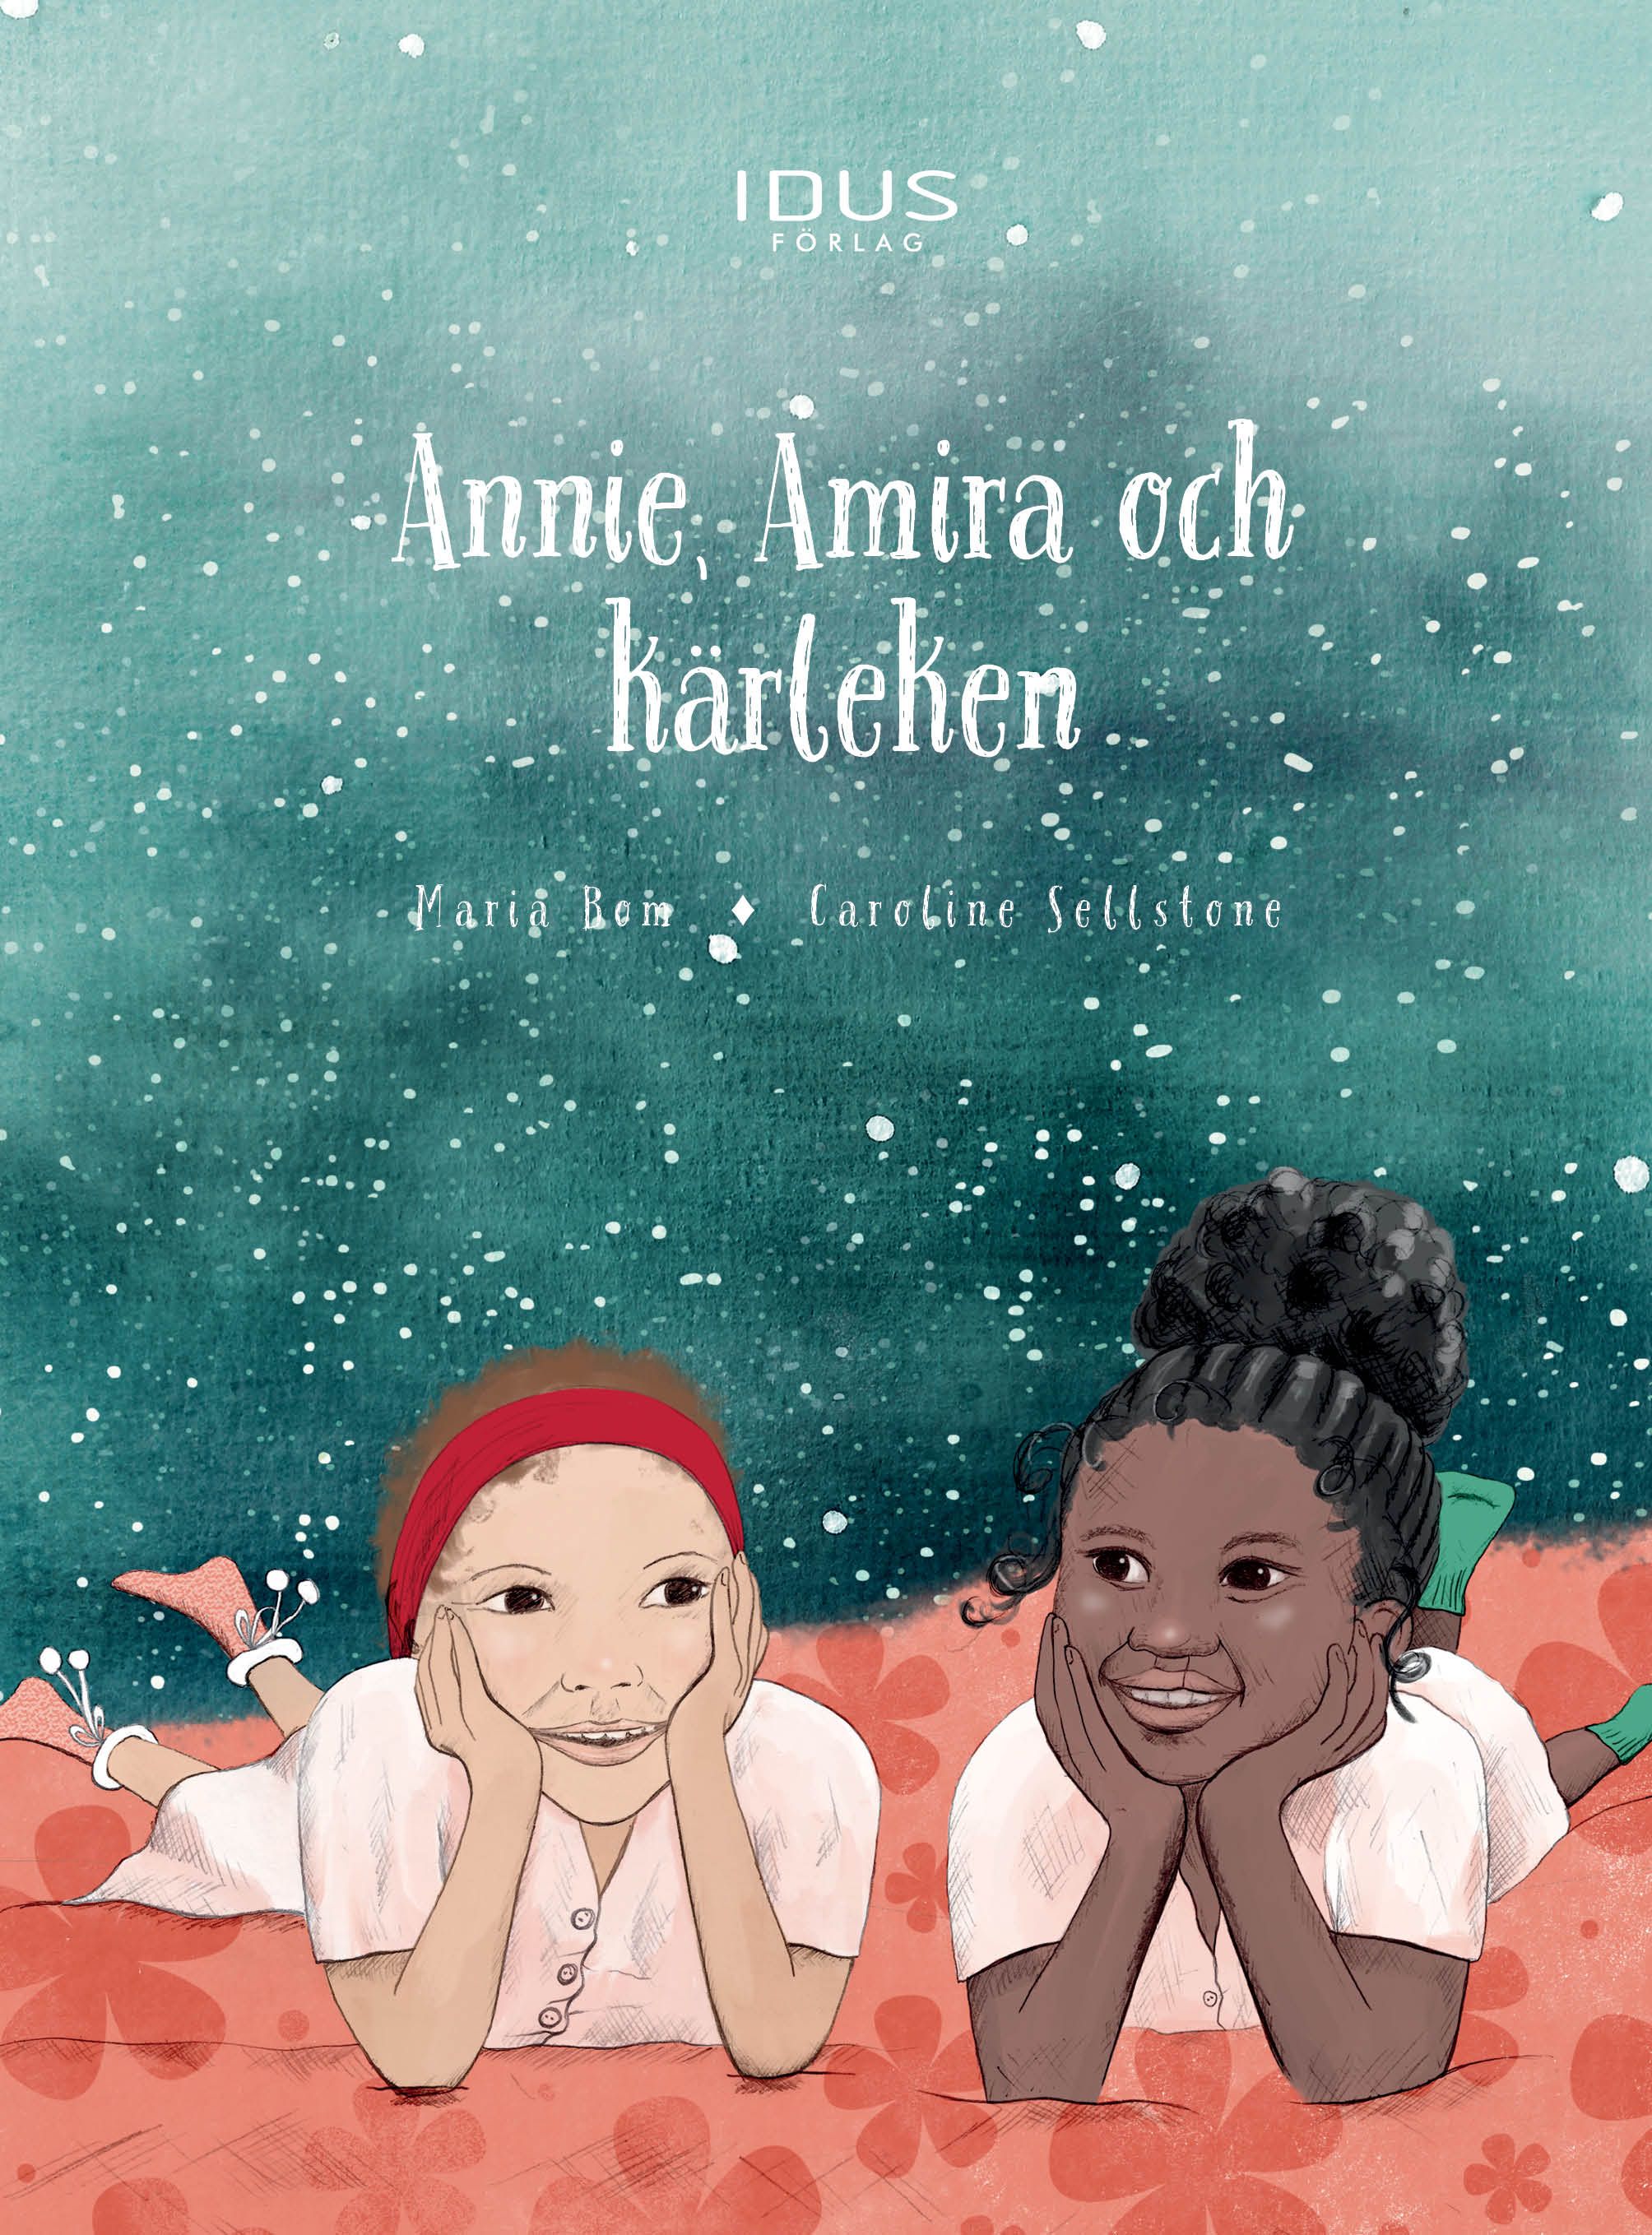 Annie, Amira och kärleken, e-bog af Maria Bom